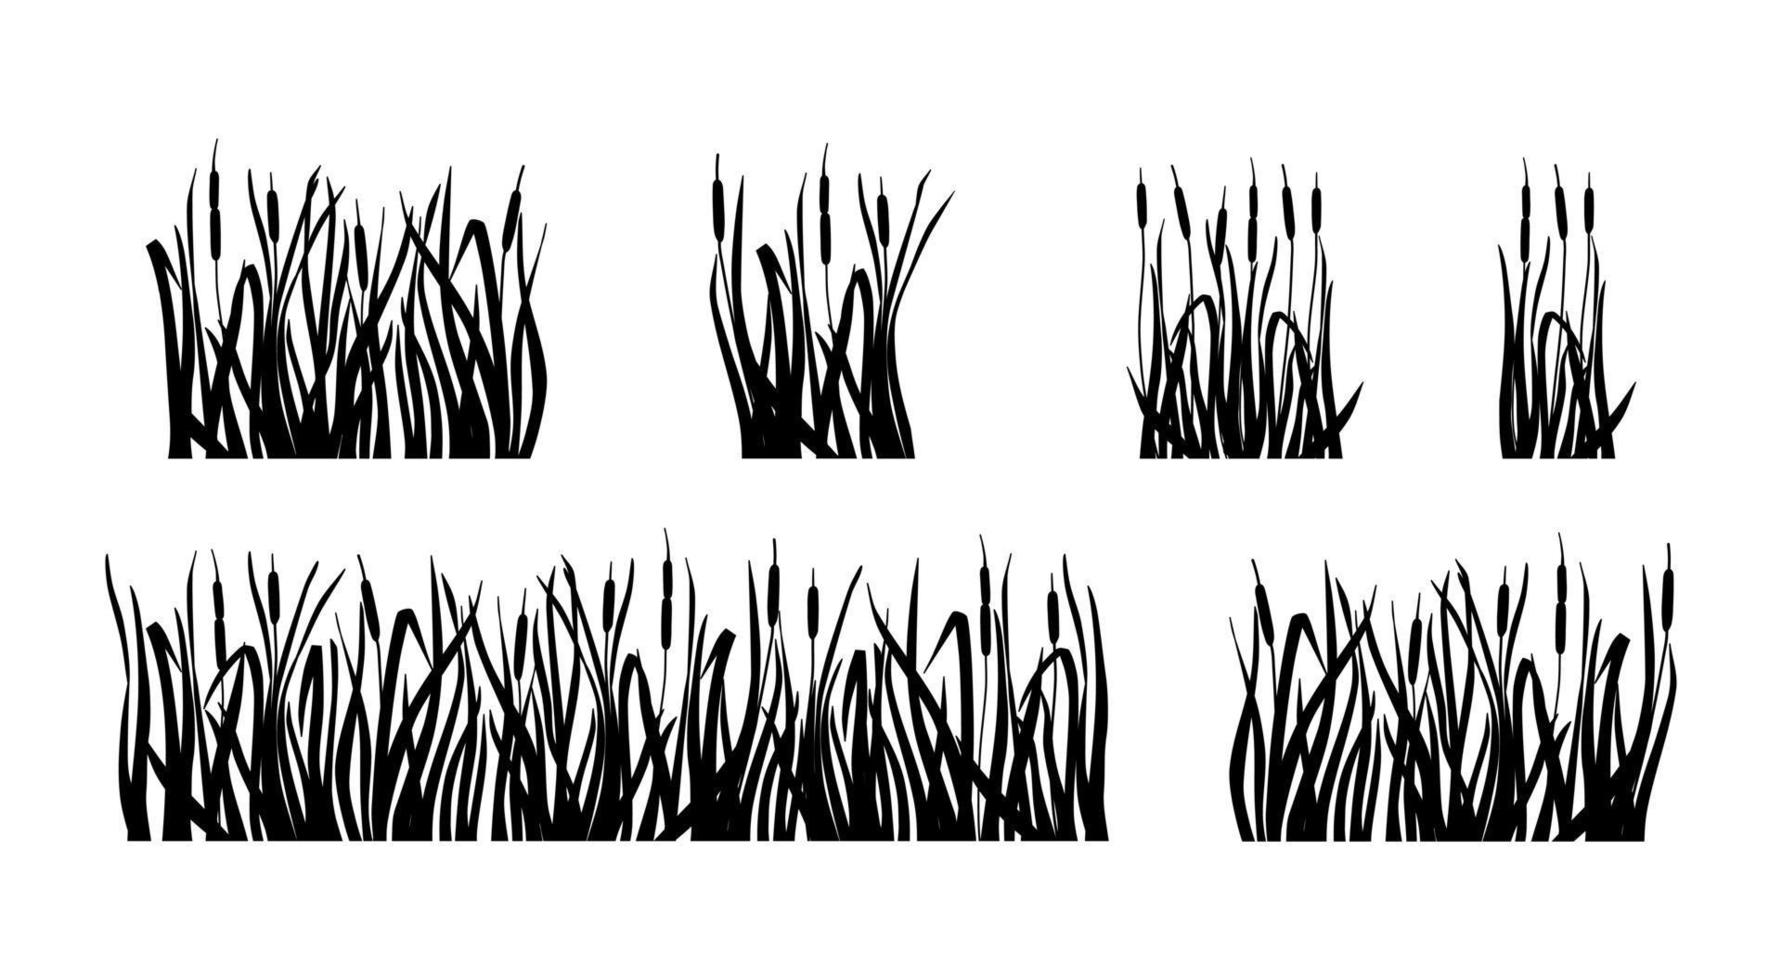 kärrgräs och vass set. siluett av cattail isolerad på vit bakgrund. vektor illustration.